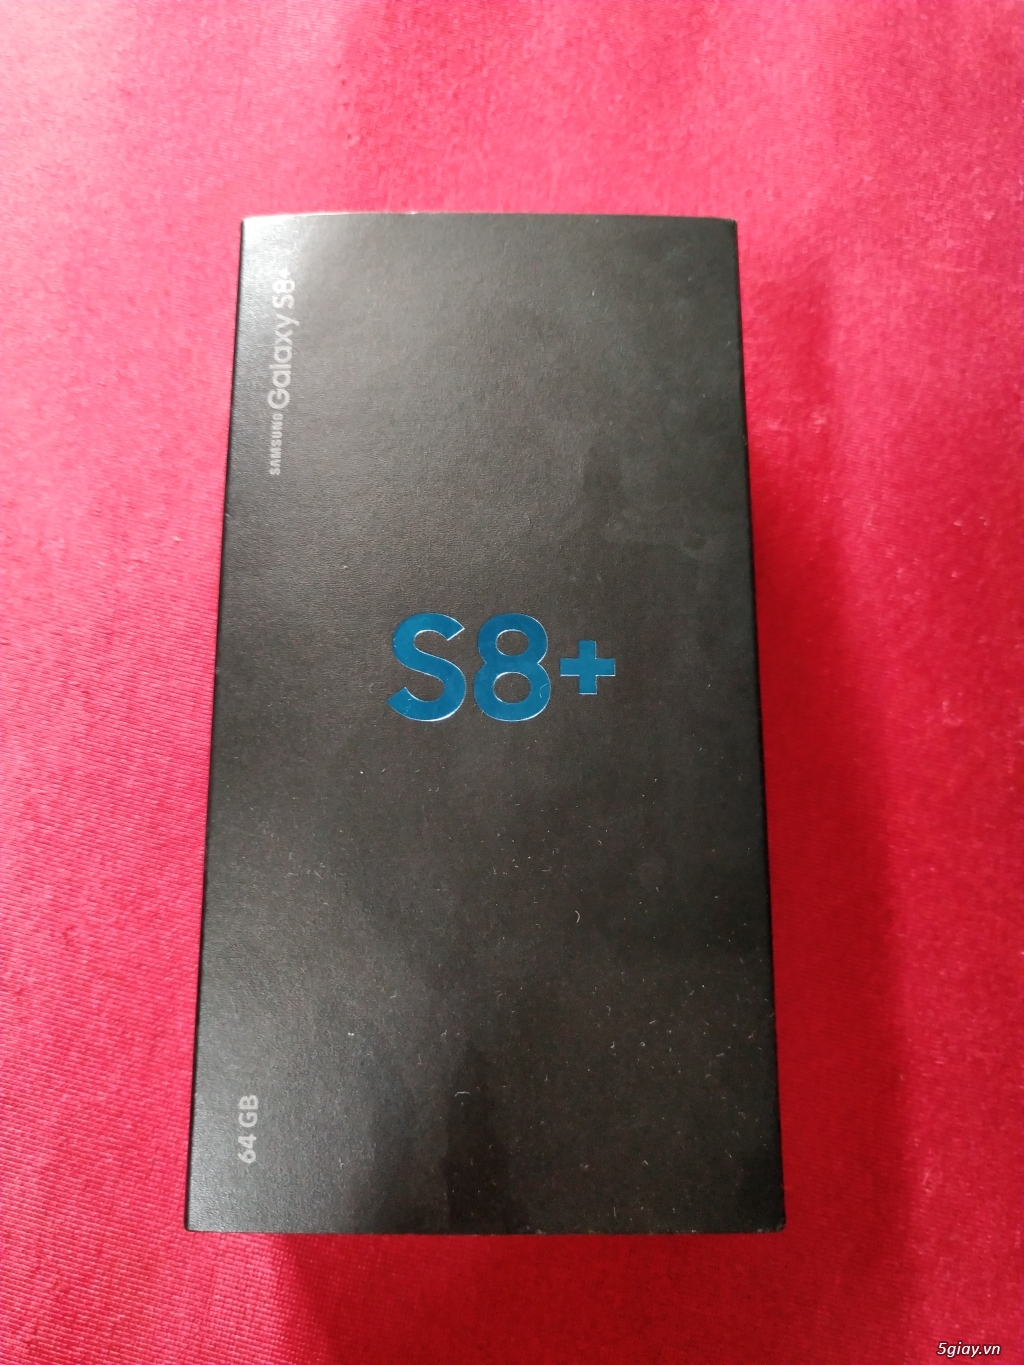 Samsung s8+ đen bóng chính hãng - 7